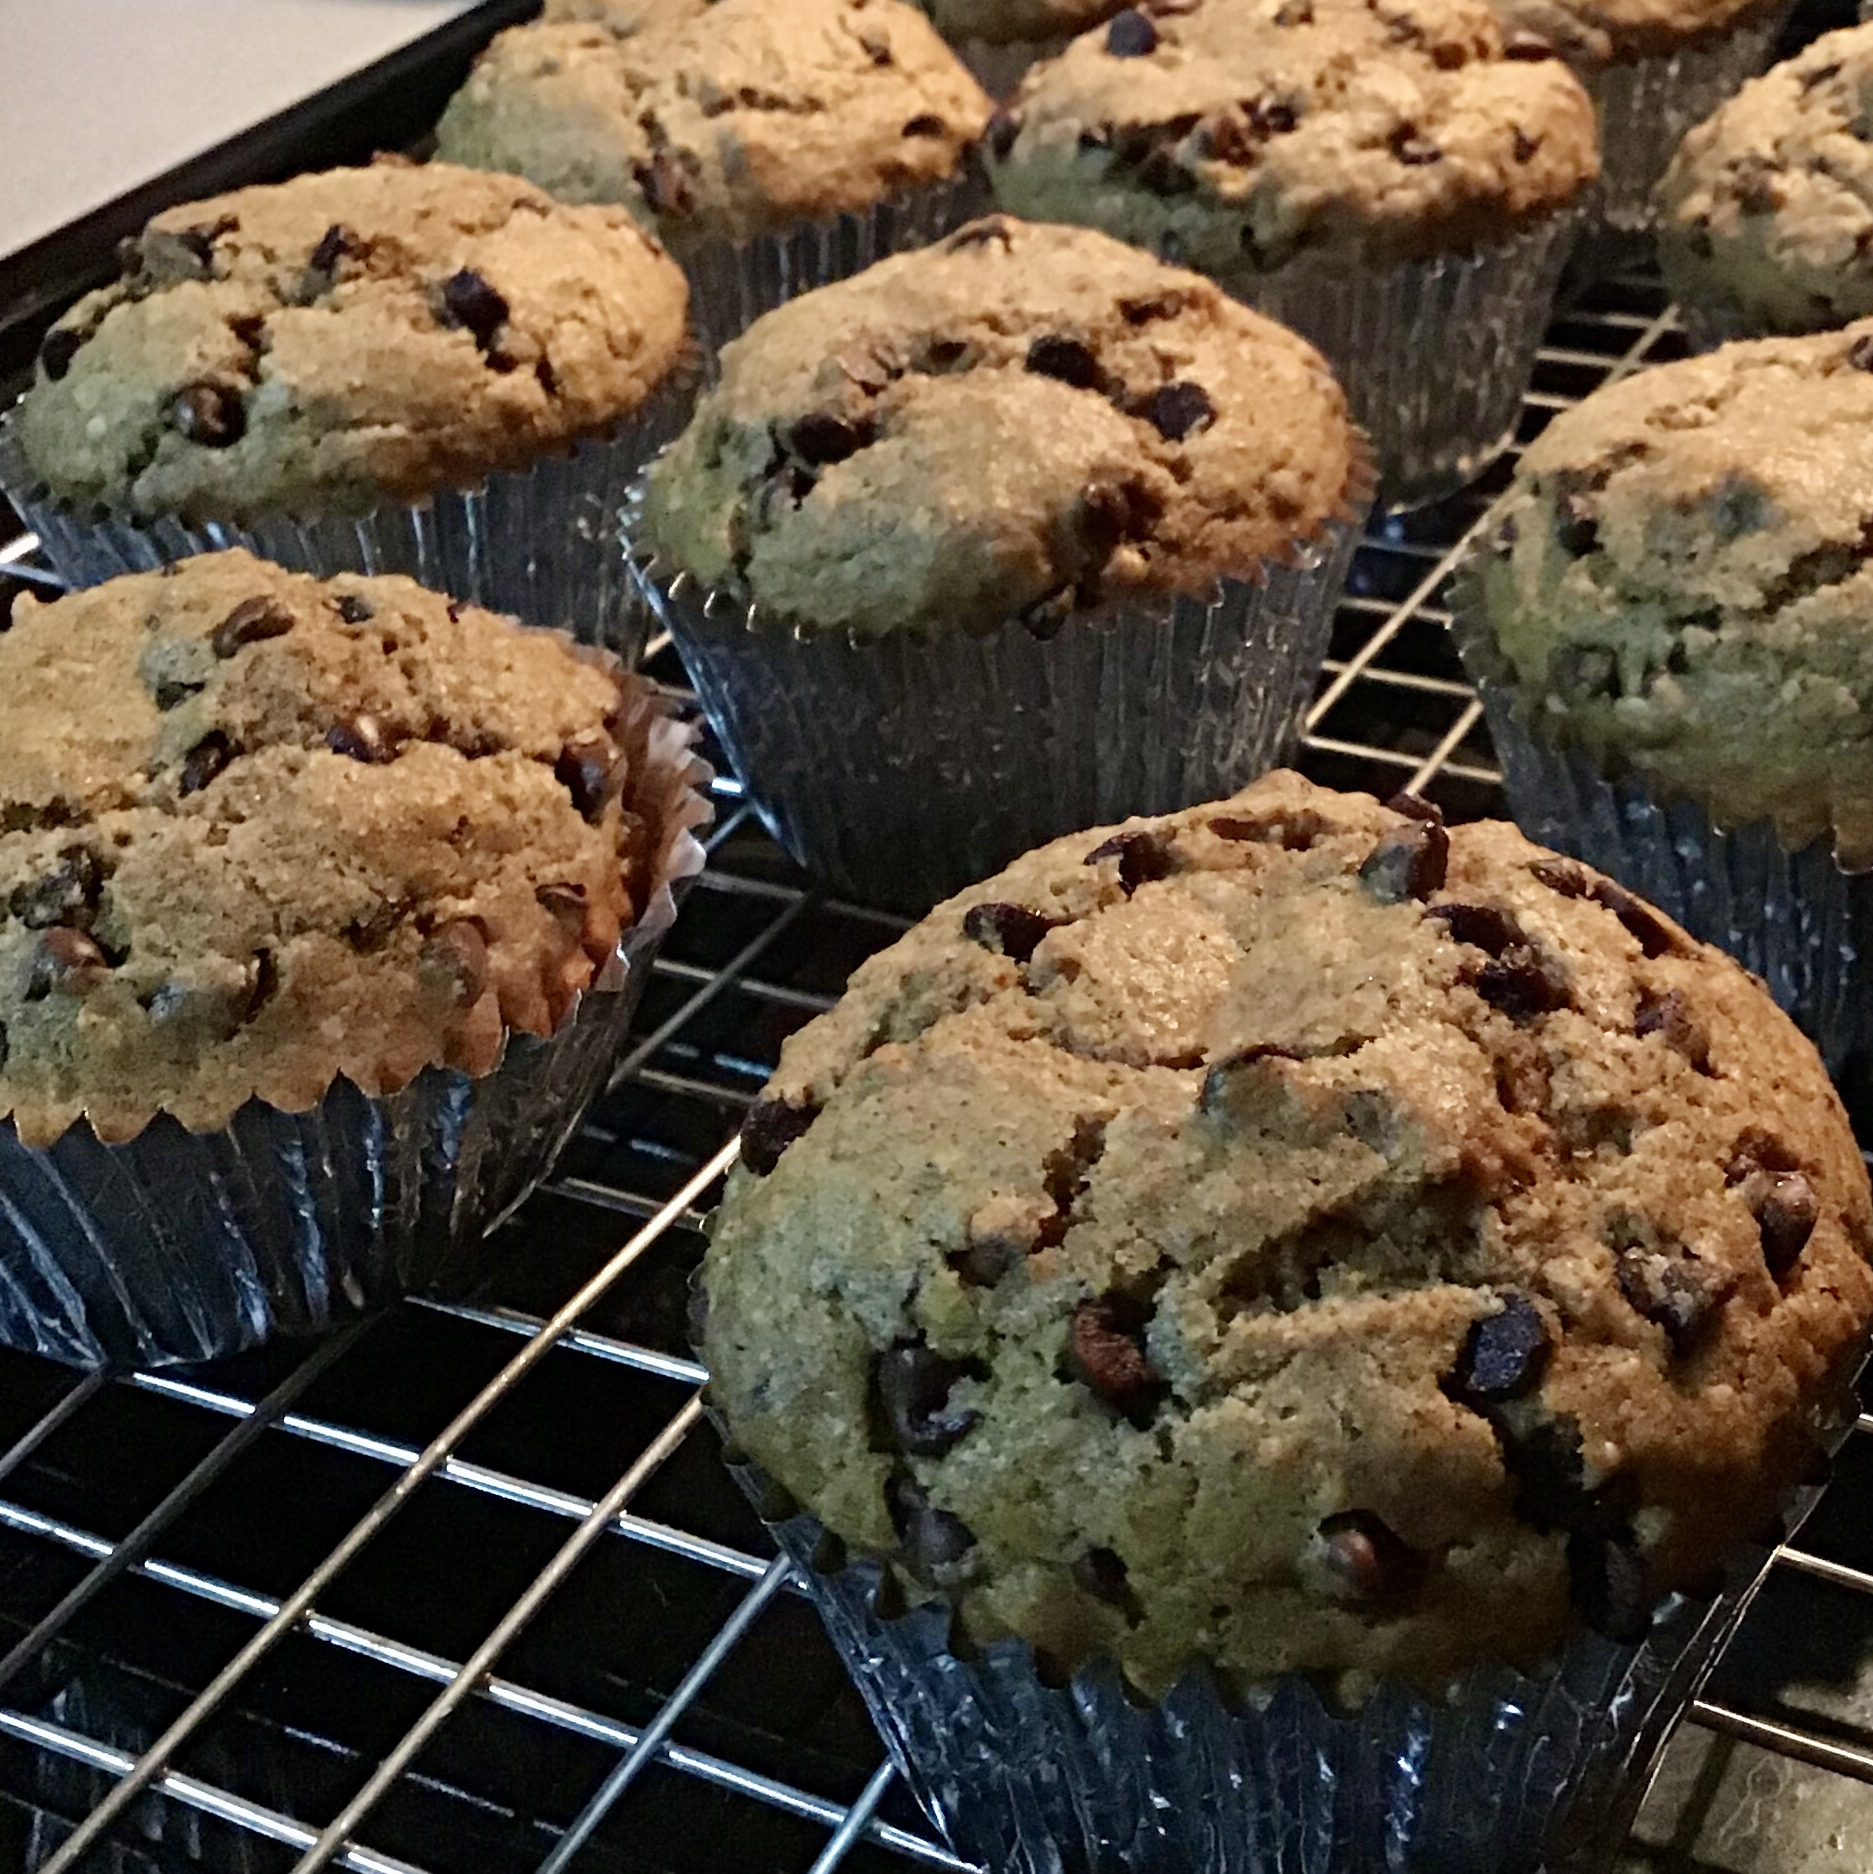 Health Nut Blueberry Muffins 